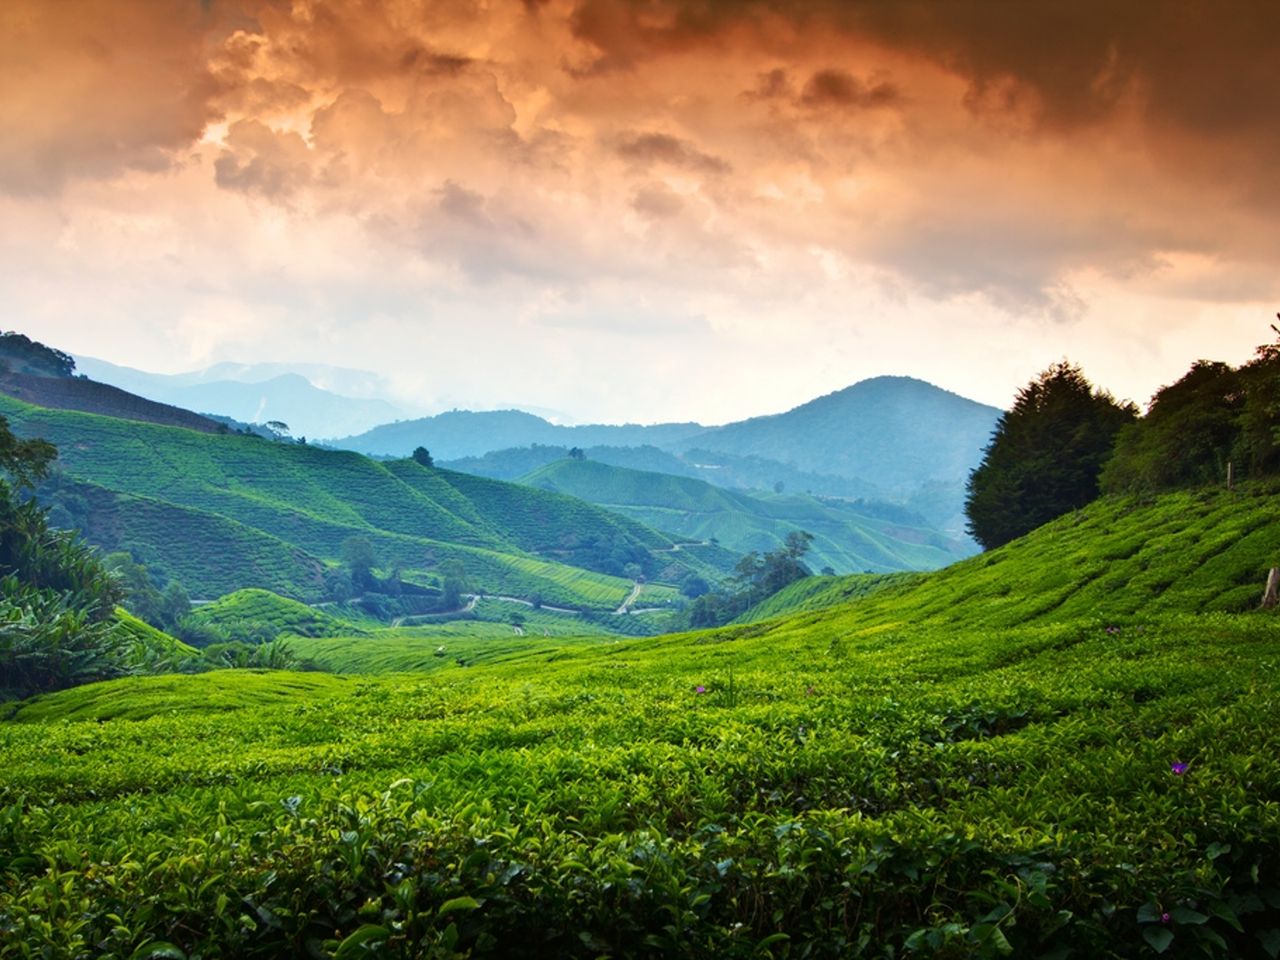 Нагорье Камерон: прохлада и чайные плантации | Цена 400€, отзывы, описание экскурсии